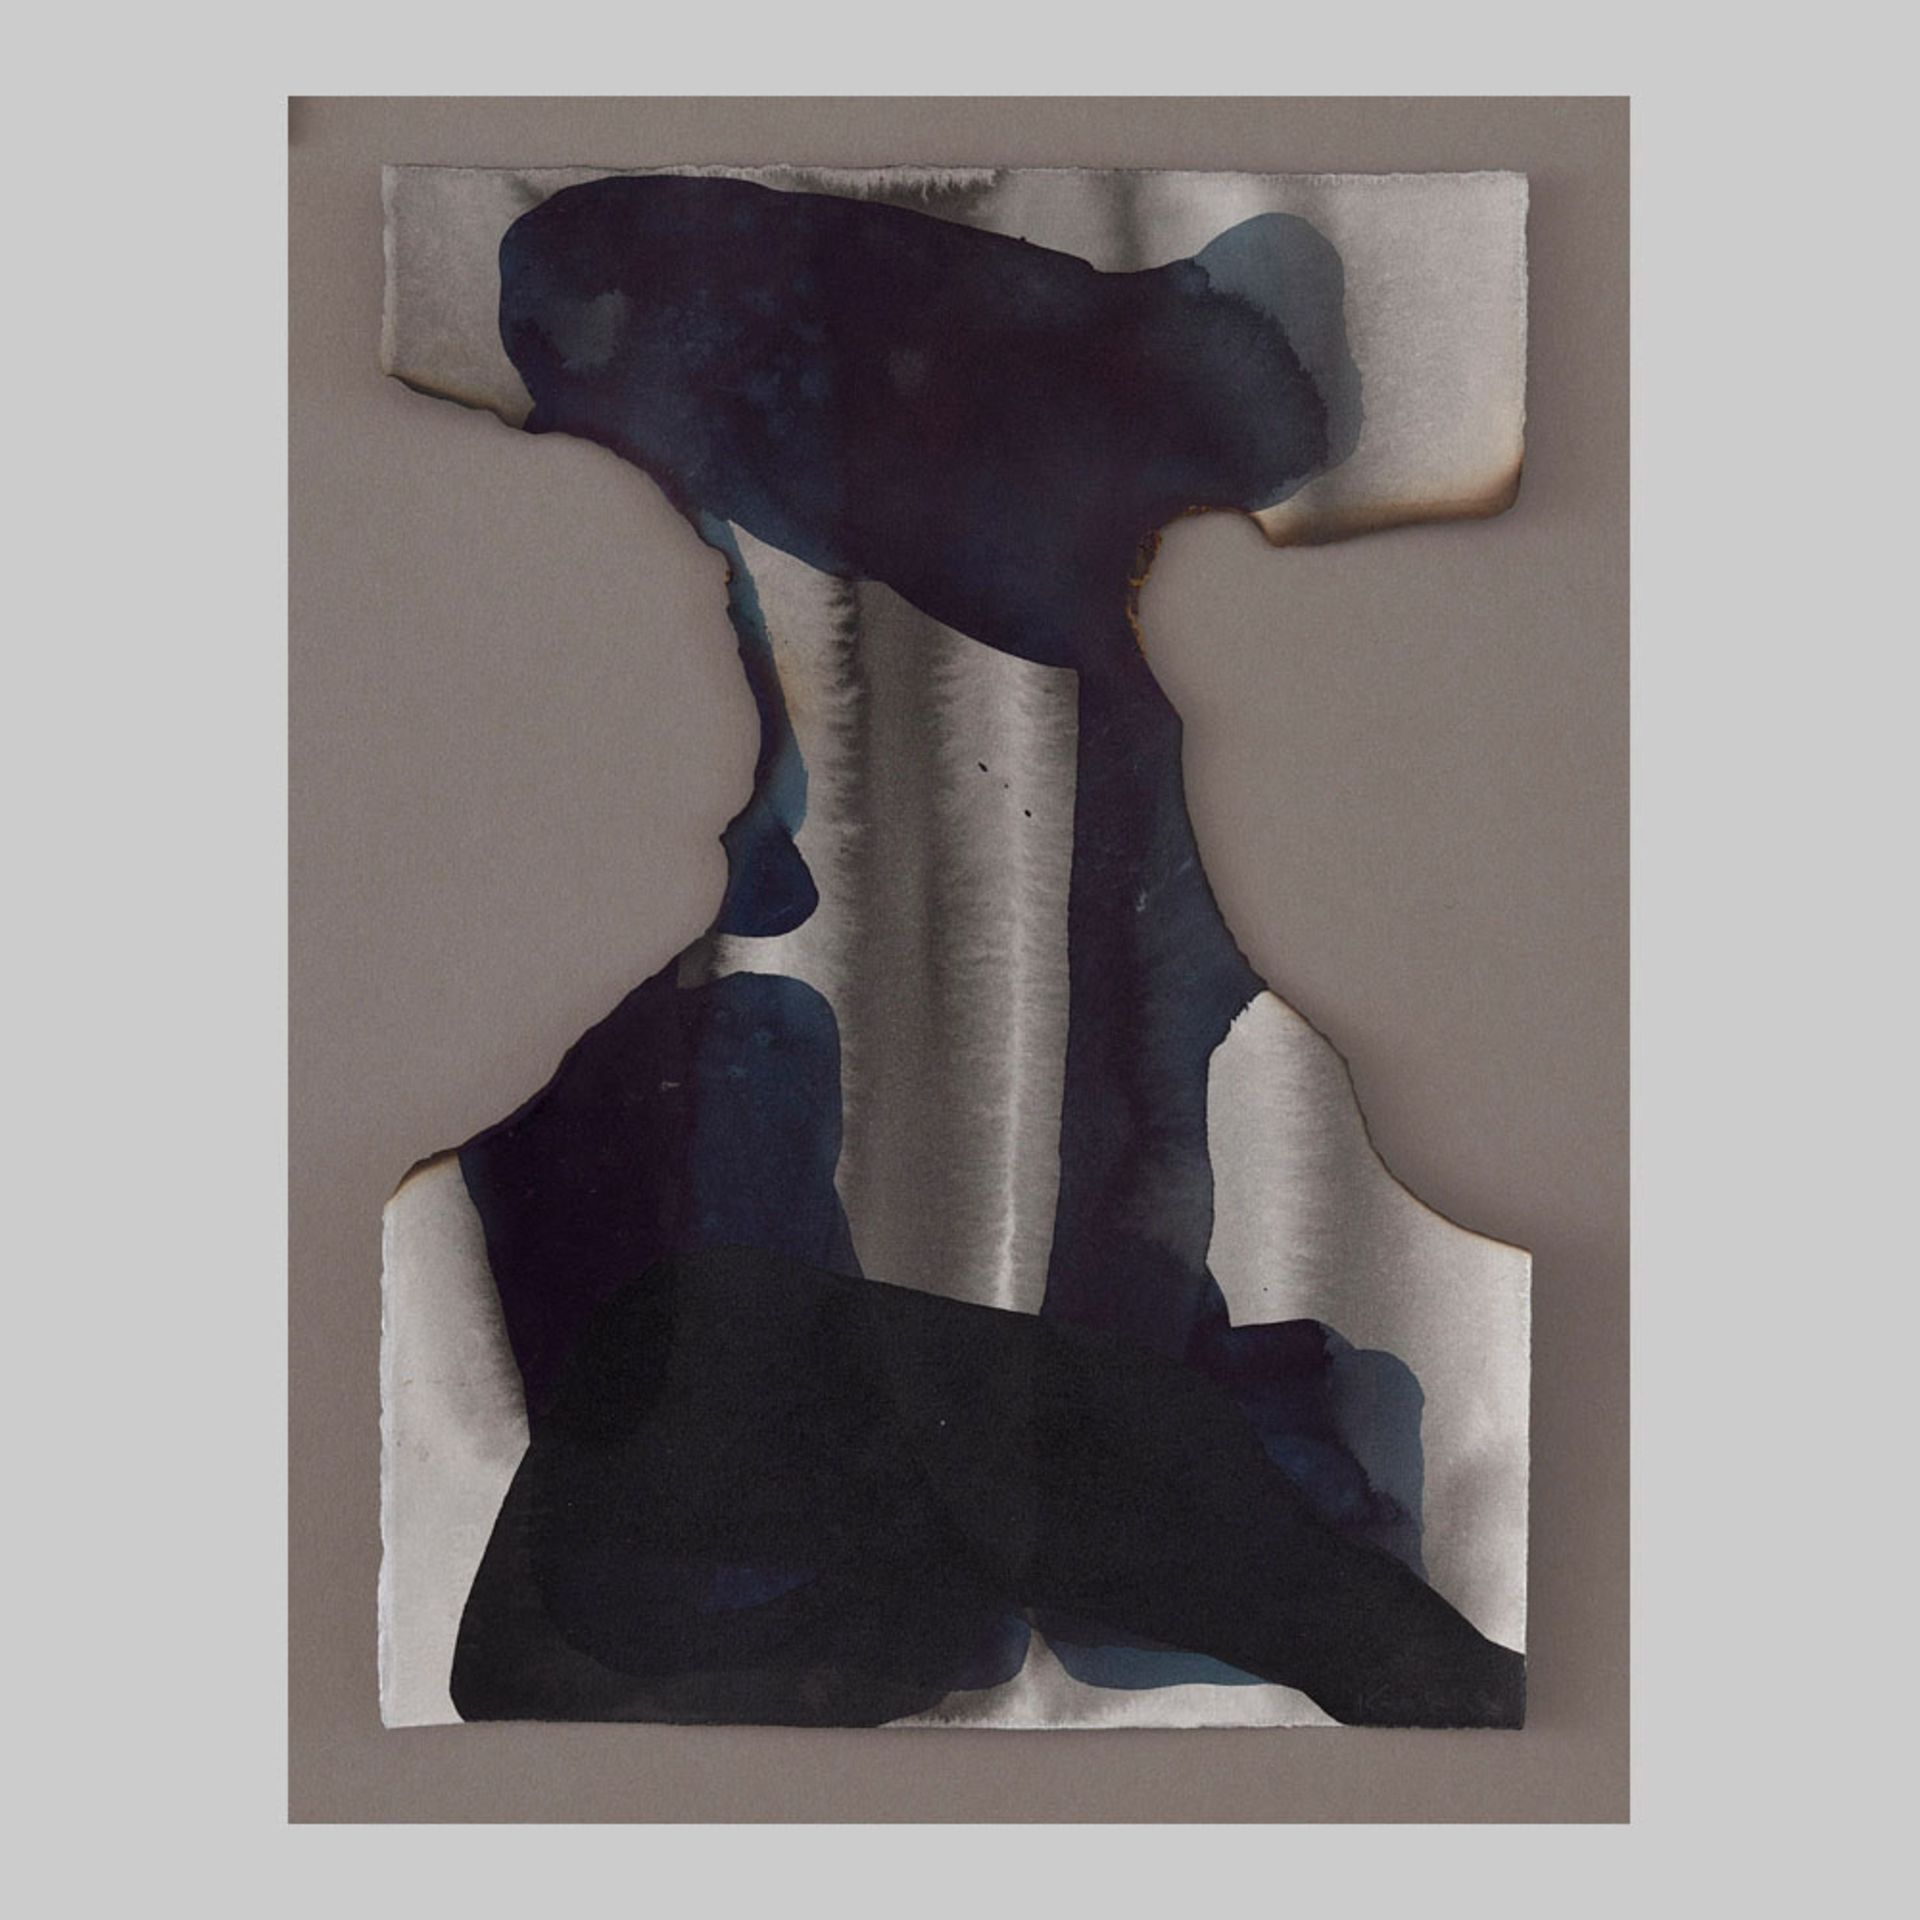 206 - - Ali Kaaf. Untitled. 2018. Tusche und Ausbrennungen auf Papier. 38 x 28 cm.